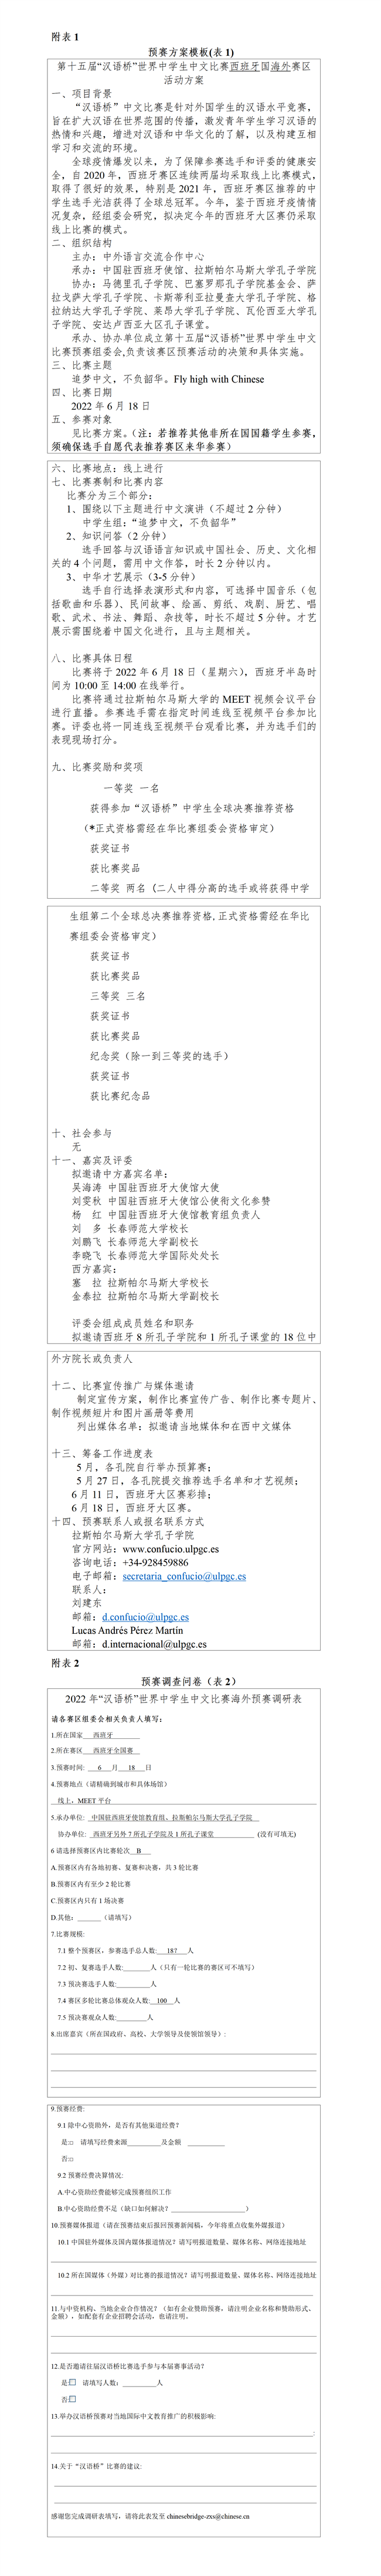 附件1：“汉语桥”世界中学生中文比赛西班牙赛区预赛方案_01.png